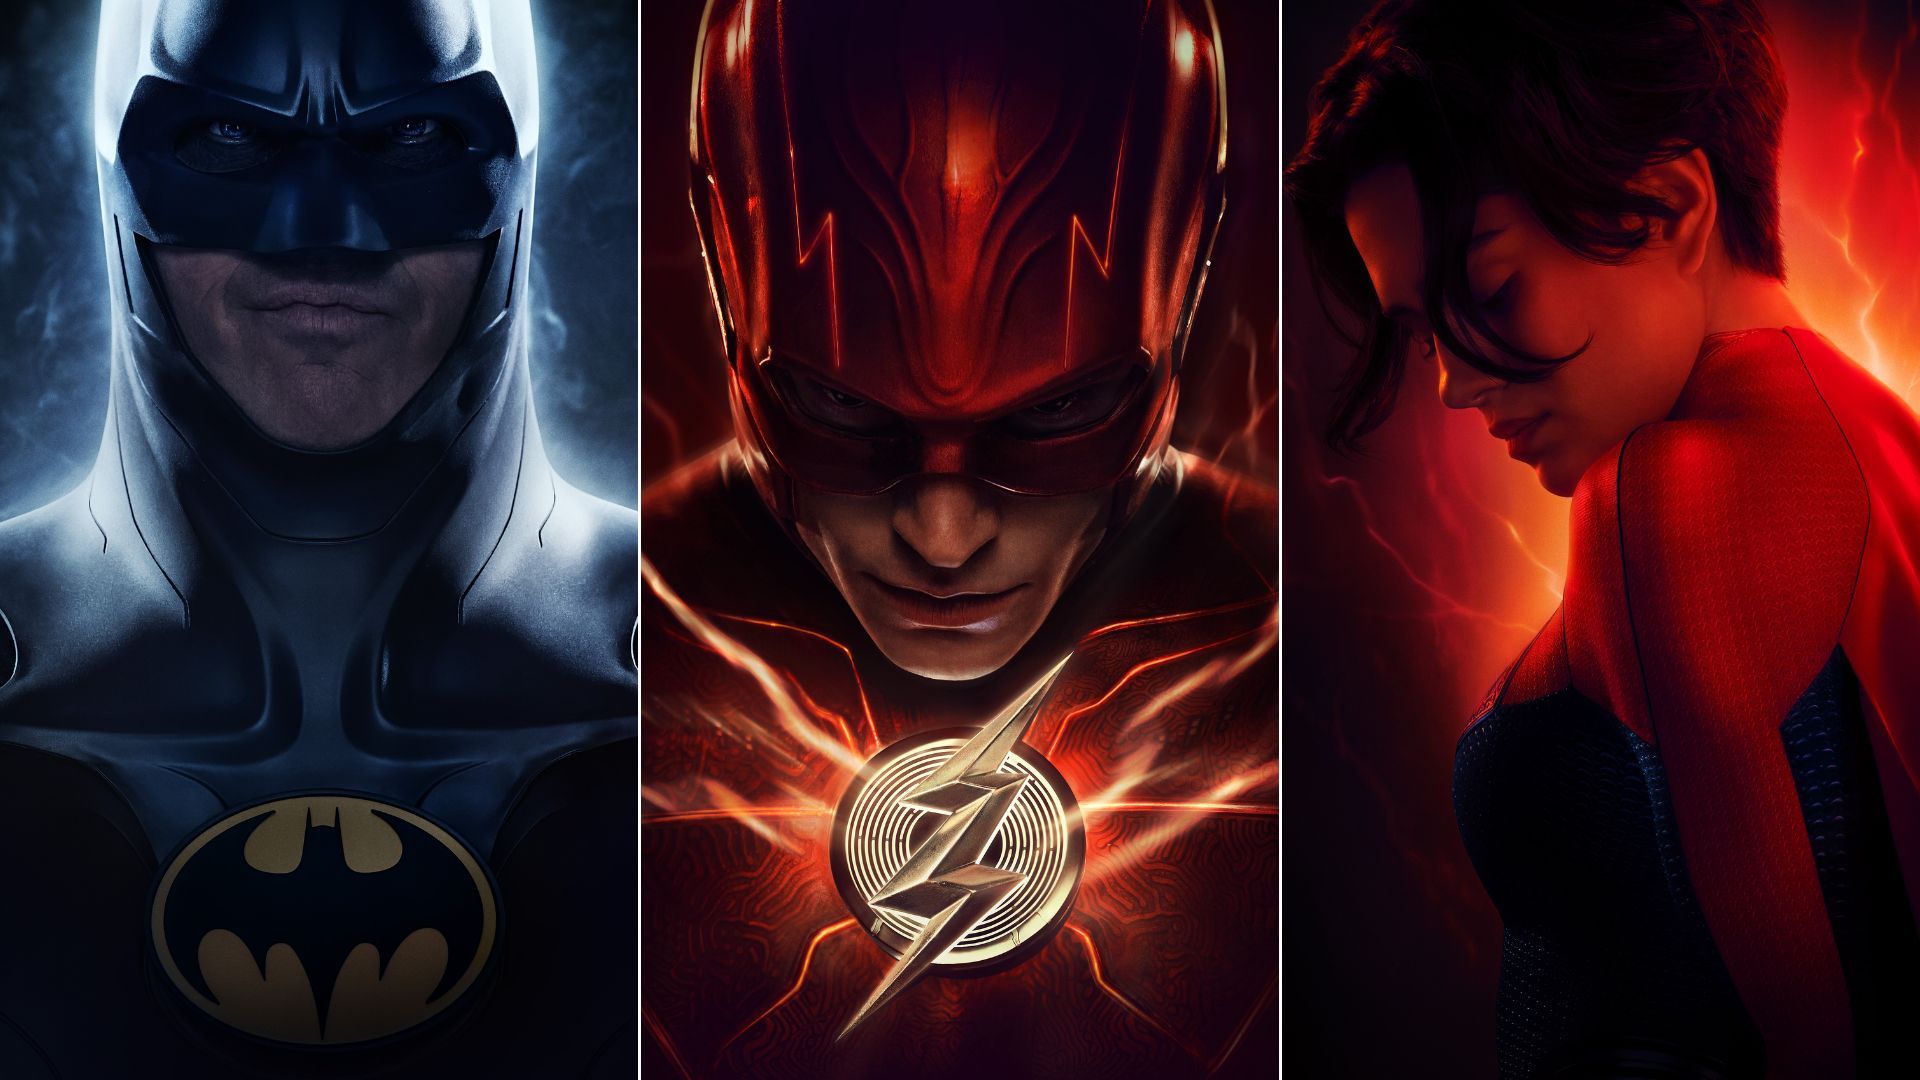 The Flash, novo filme da DC, estreia nos cinemas brasileiros